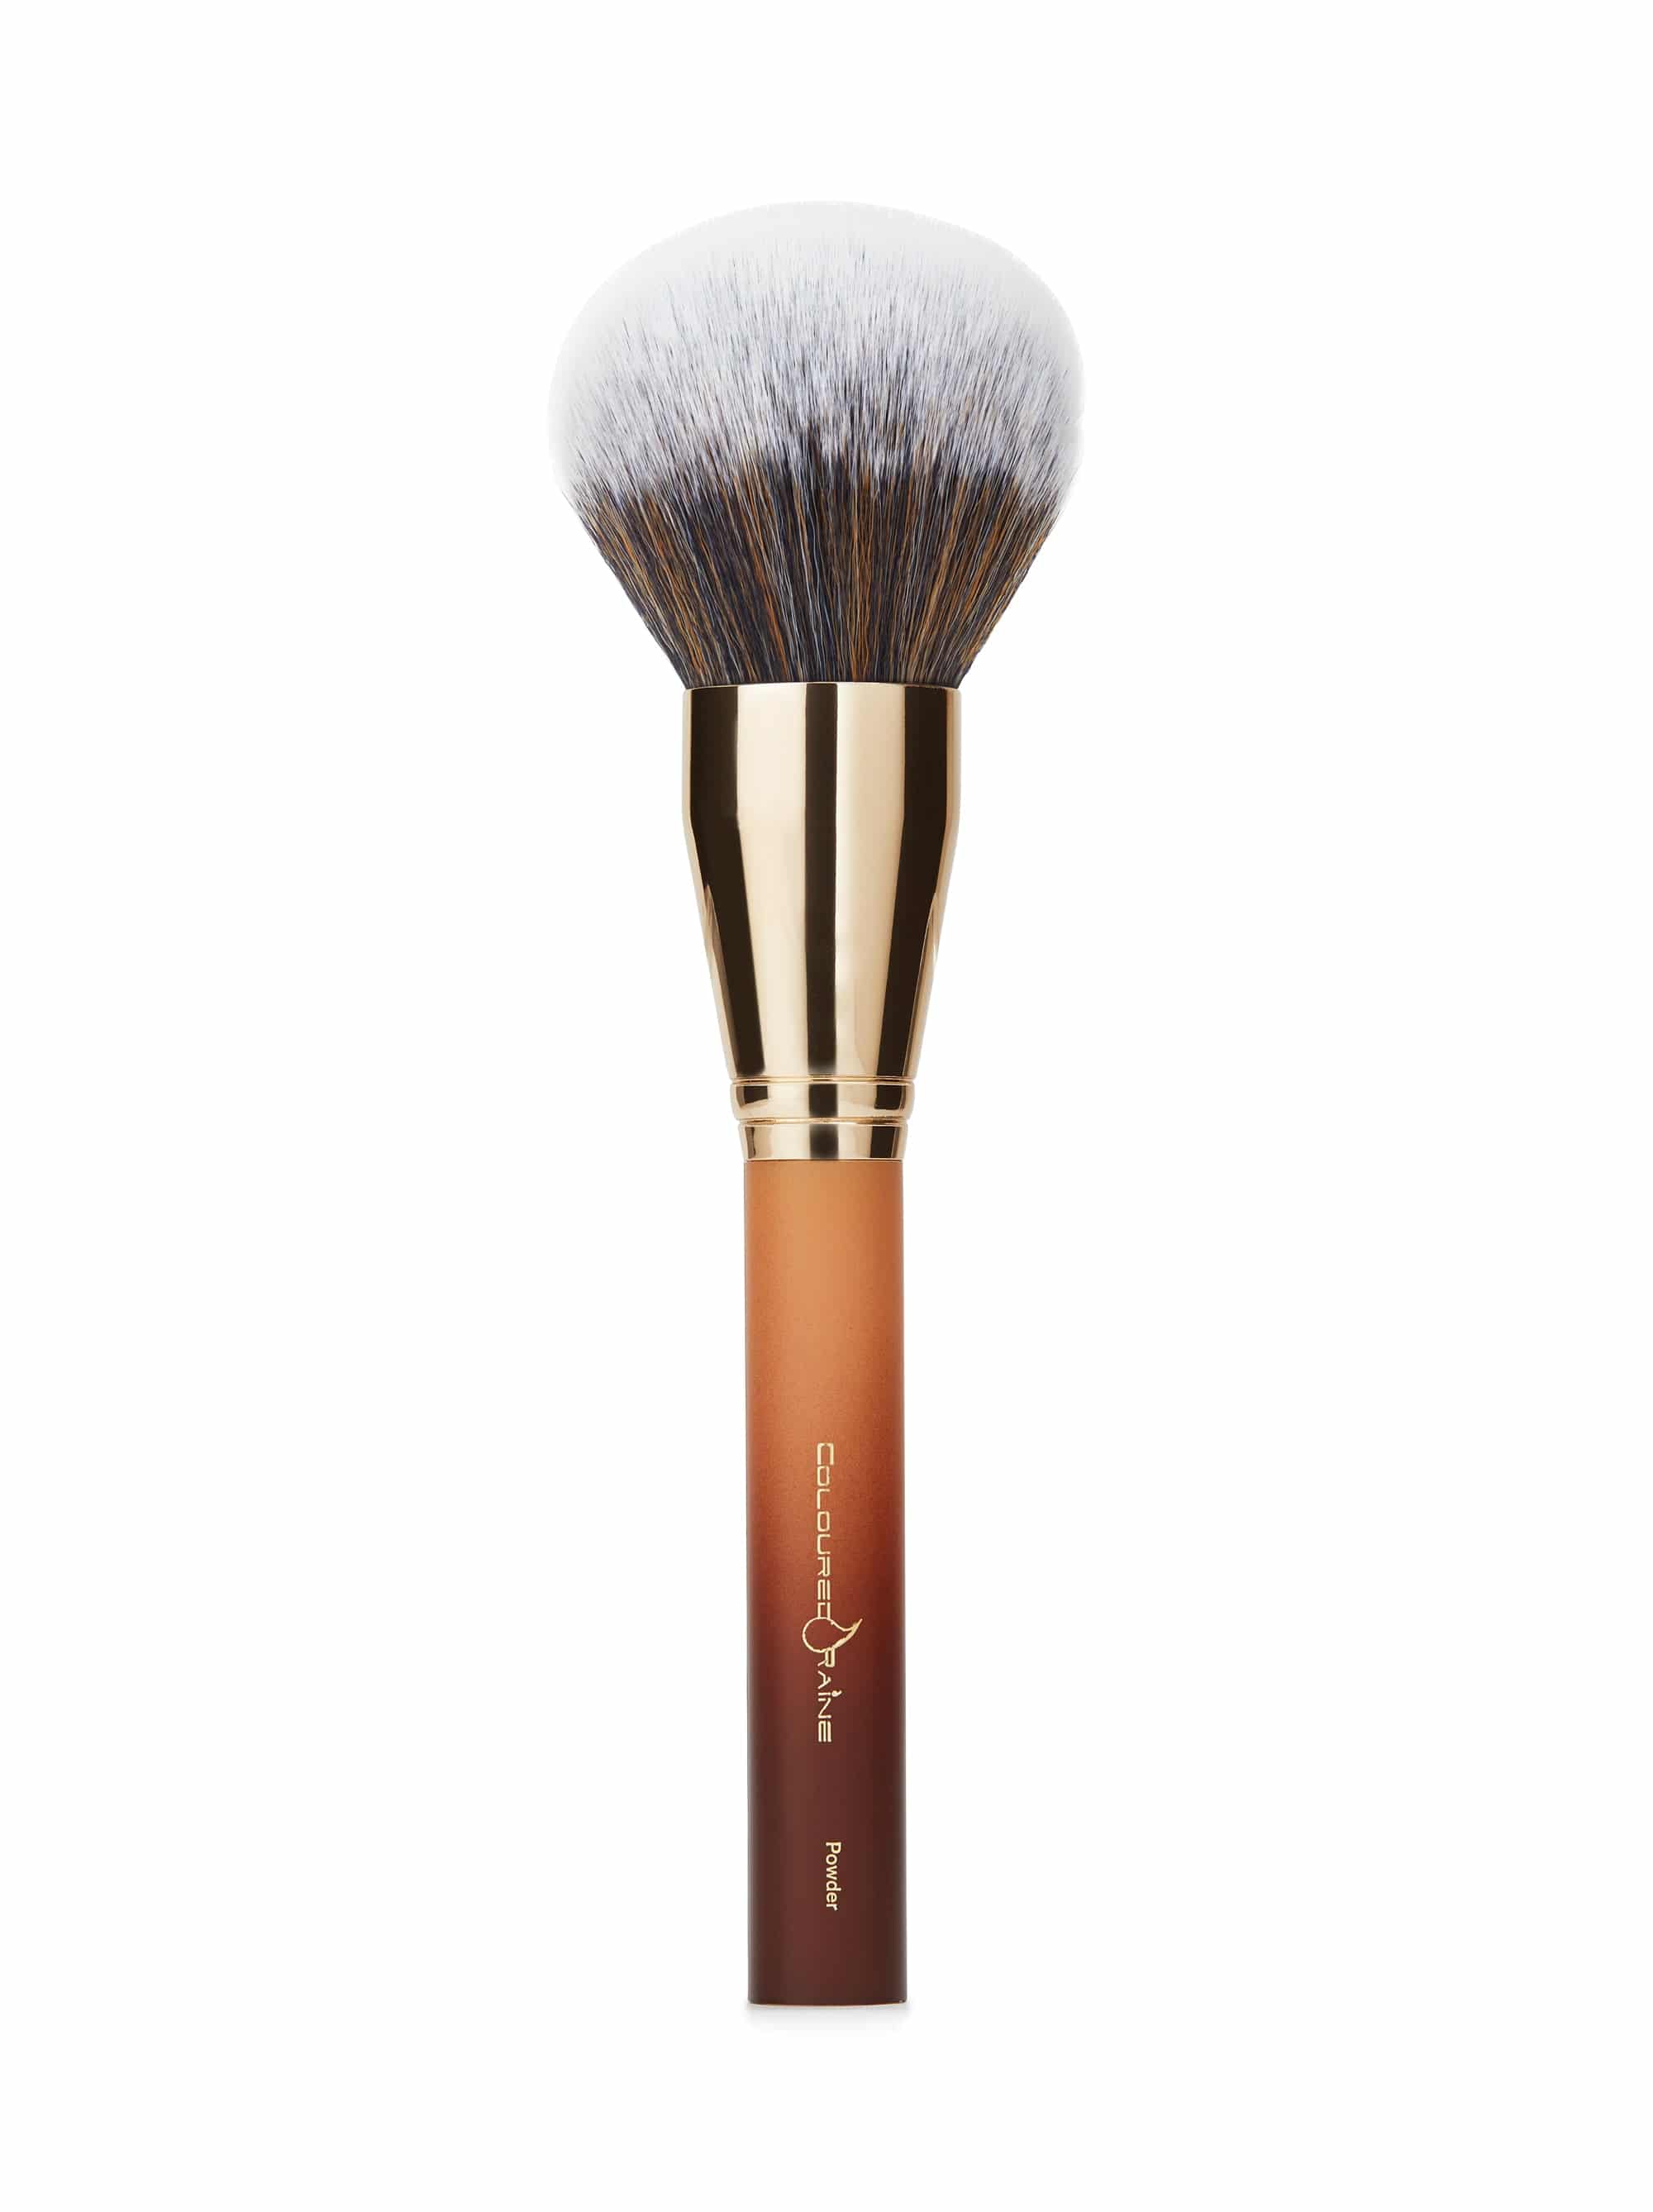 Signature Large Powder Brush - Coloured Raine Cosmetics